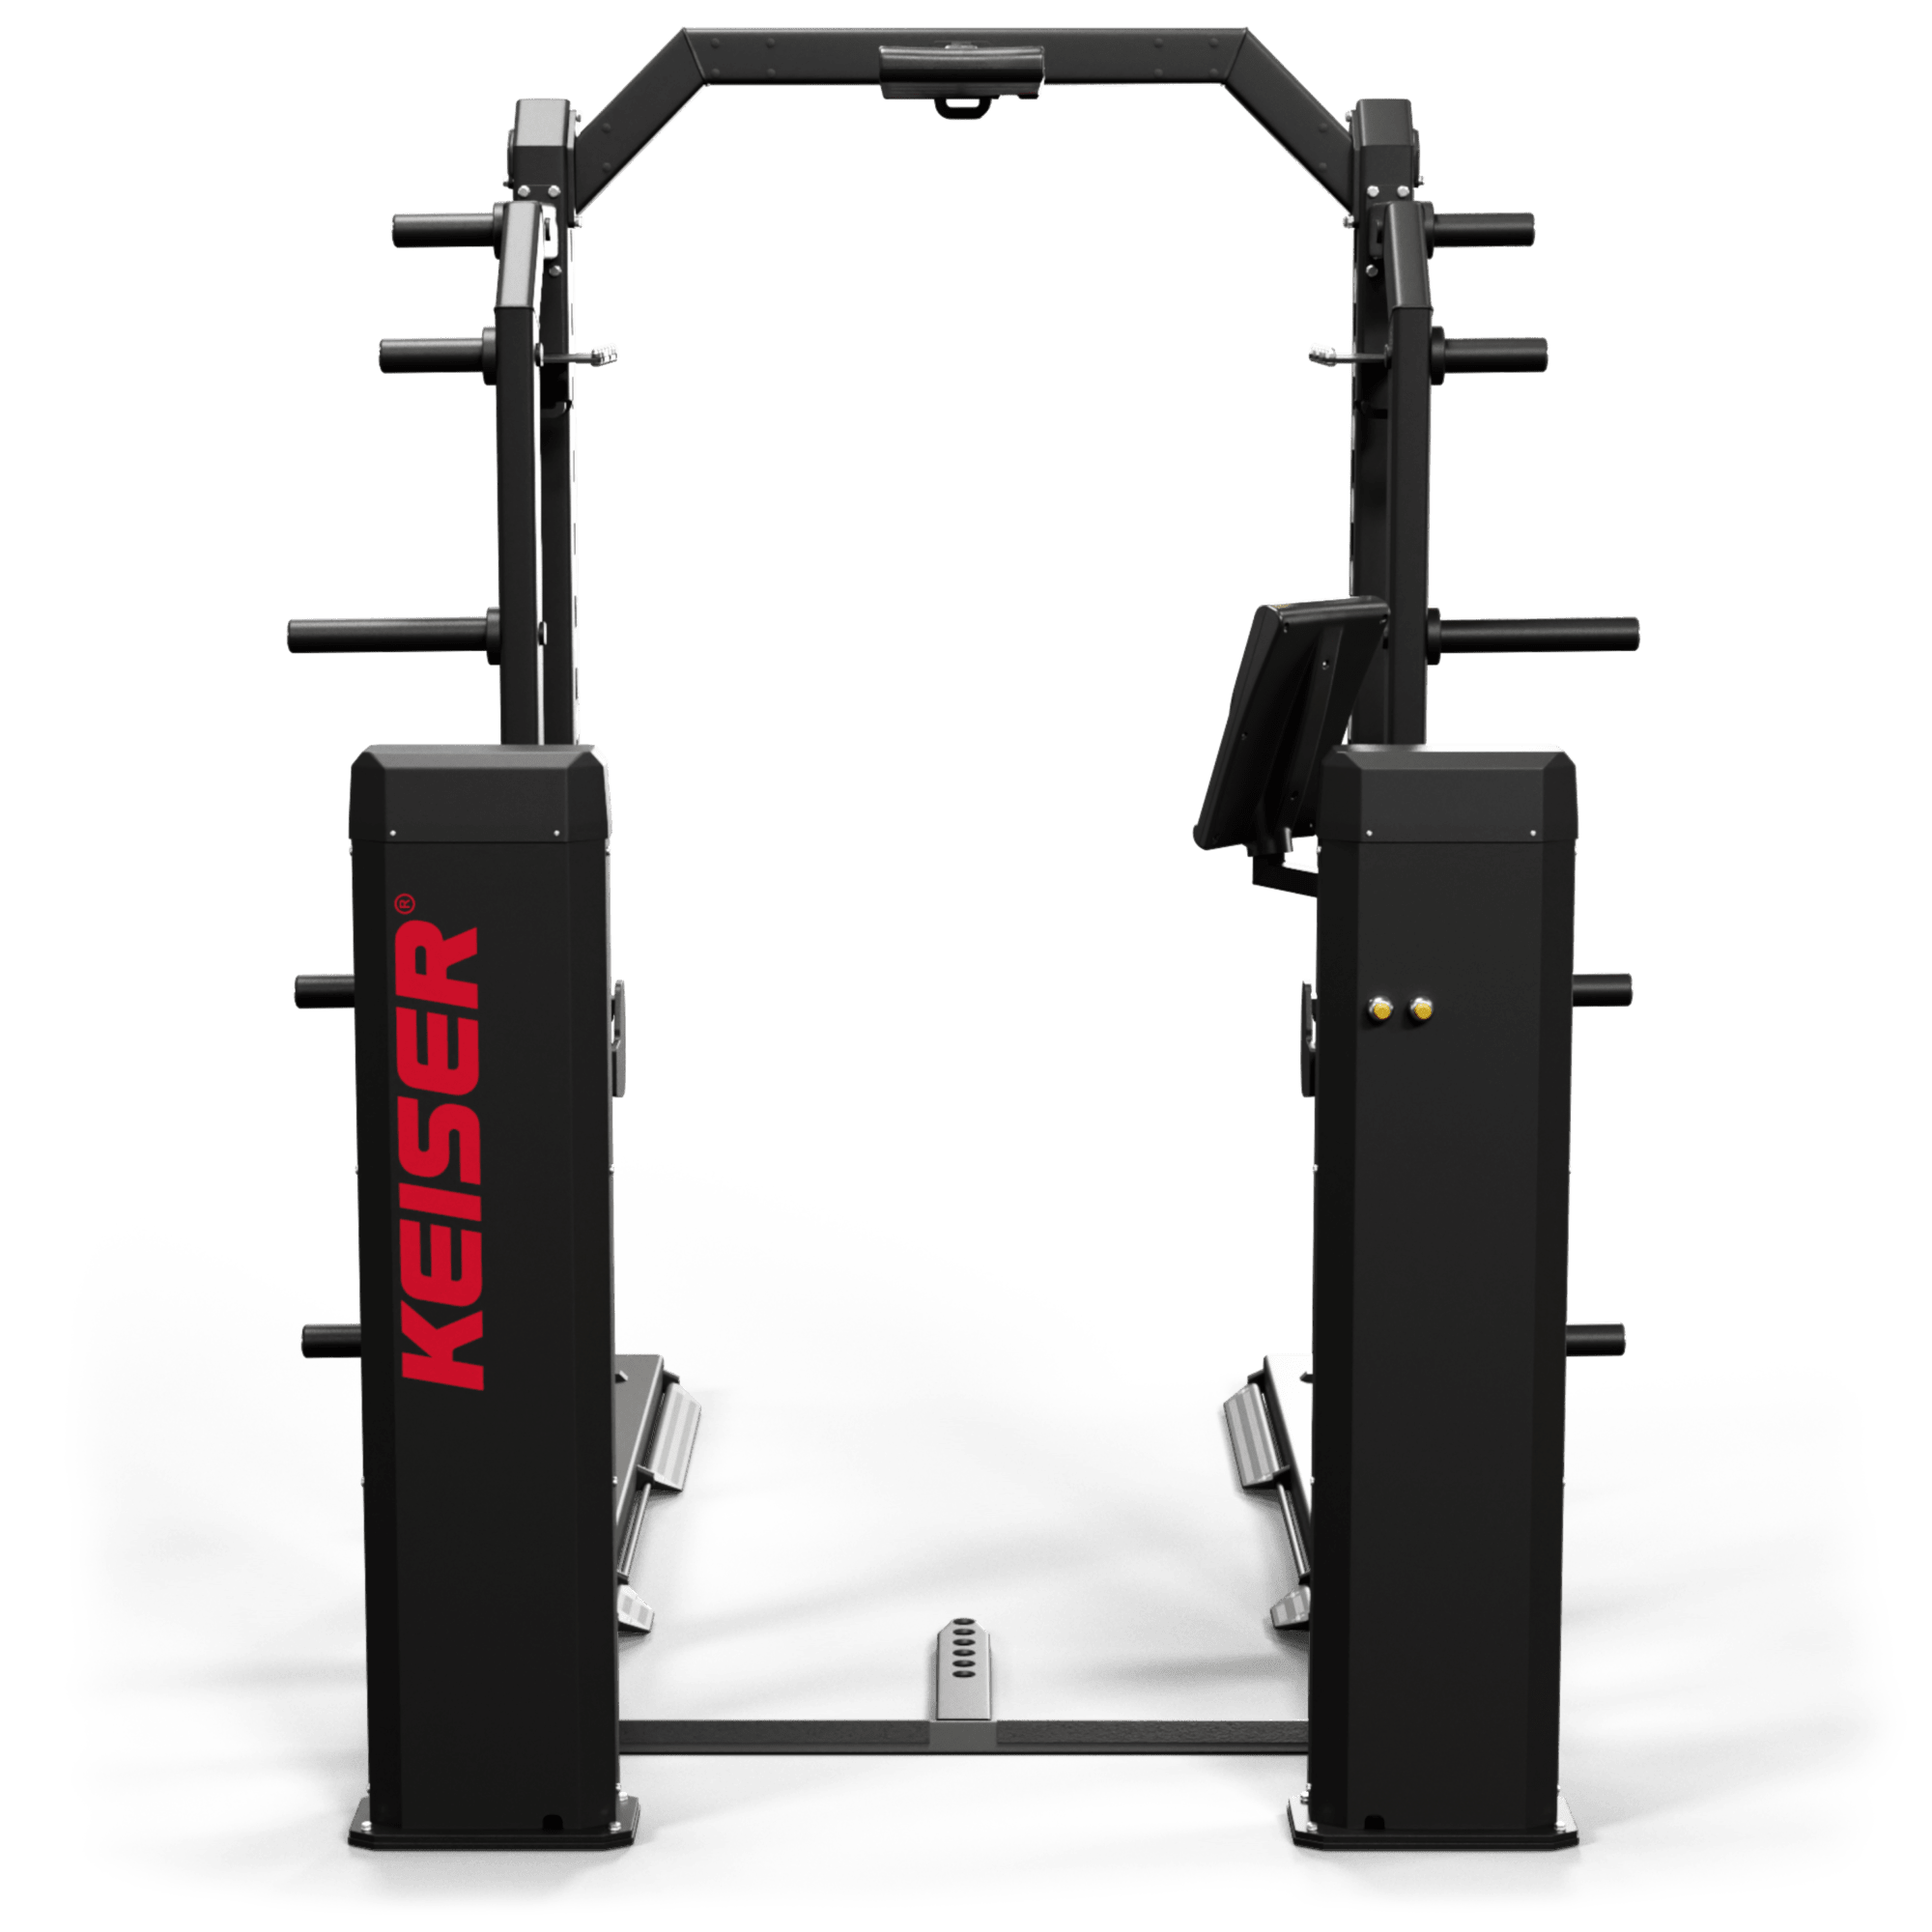 Keiser 8' Half Rack Long Base met foot pedals - Power Display